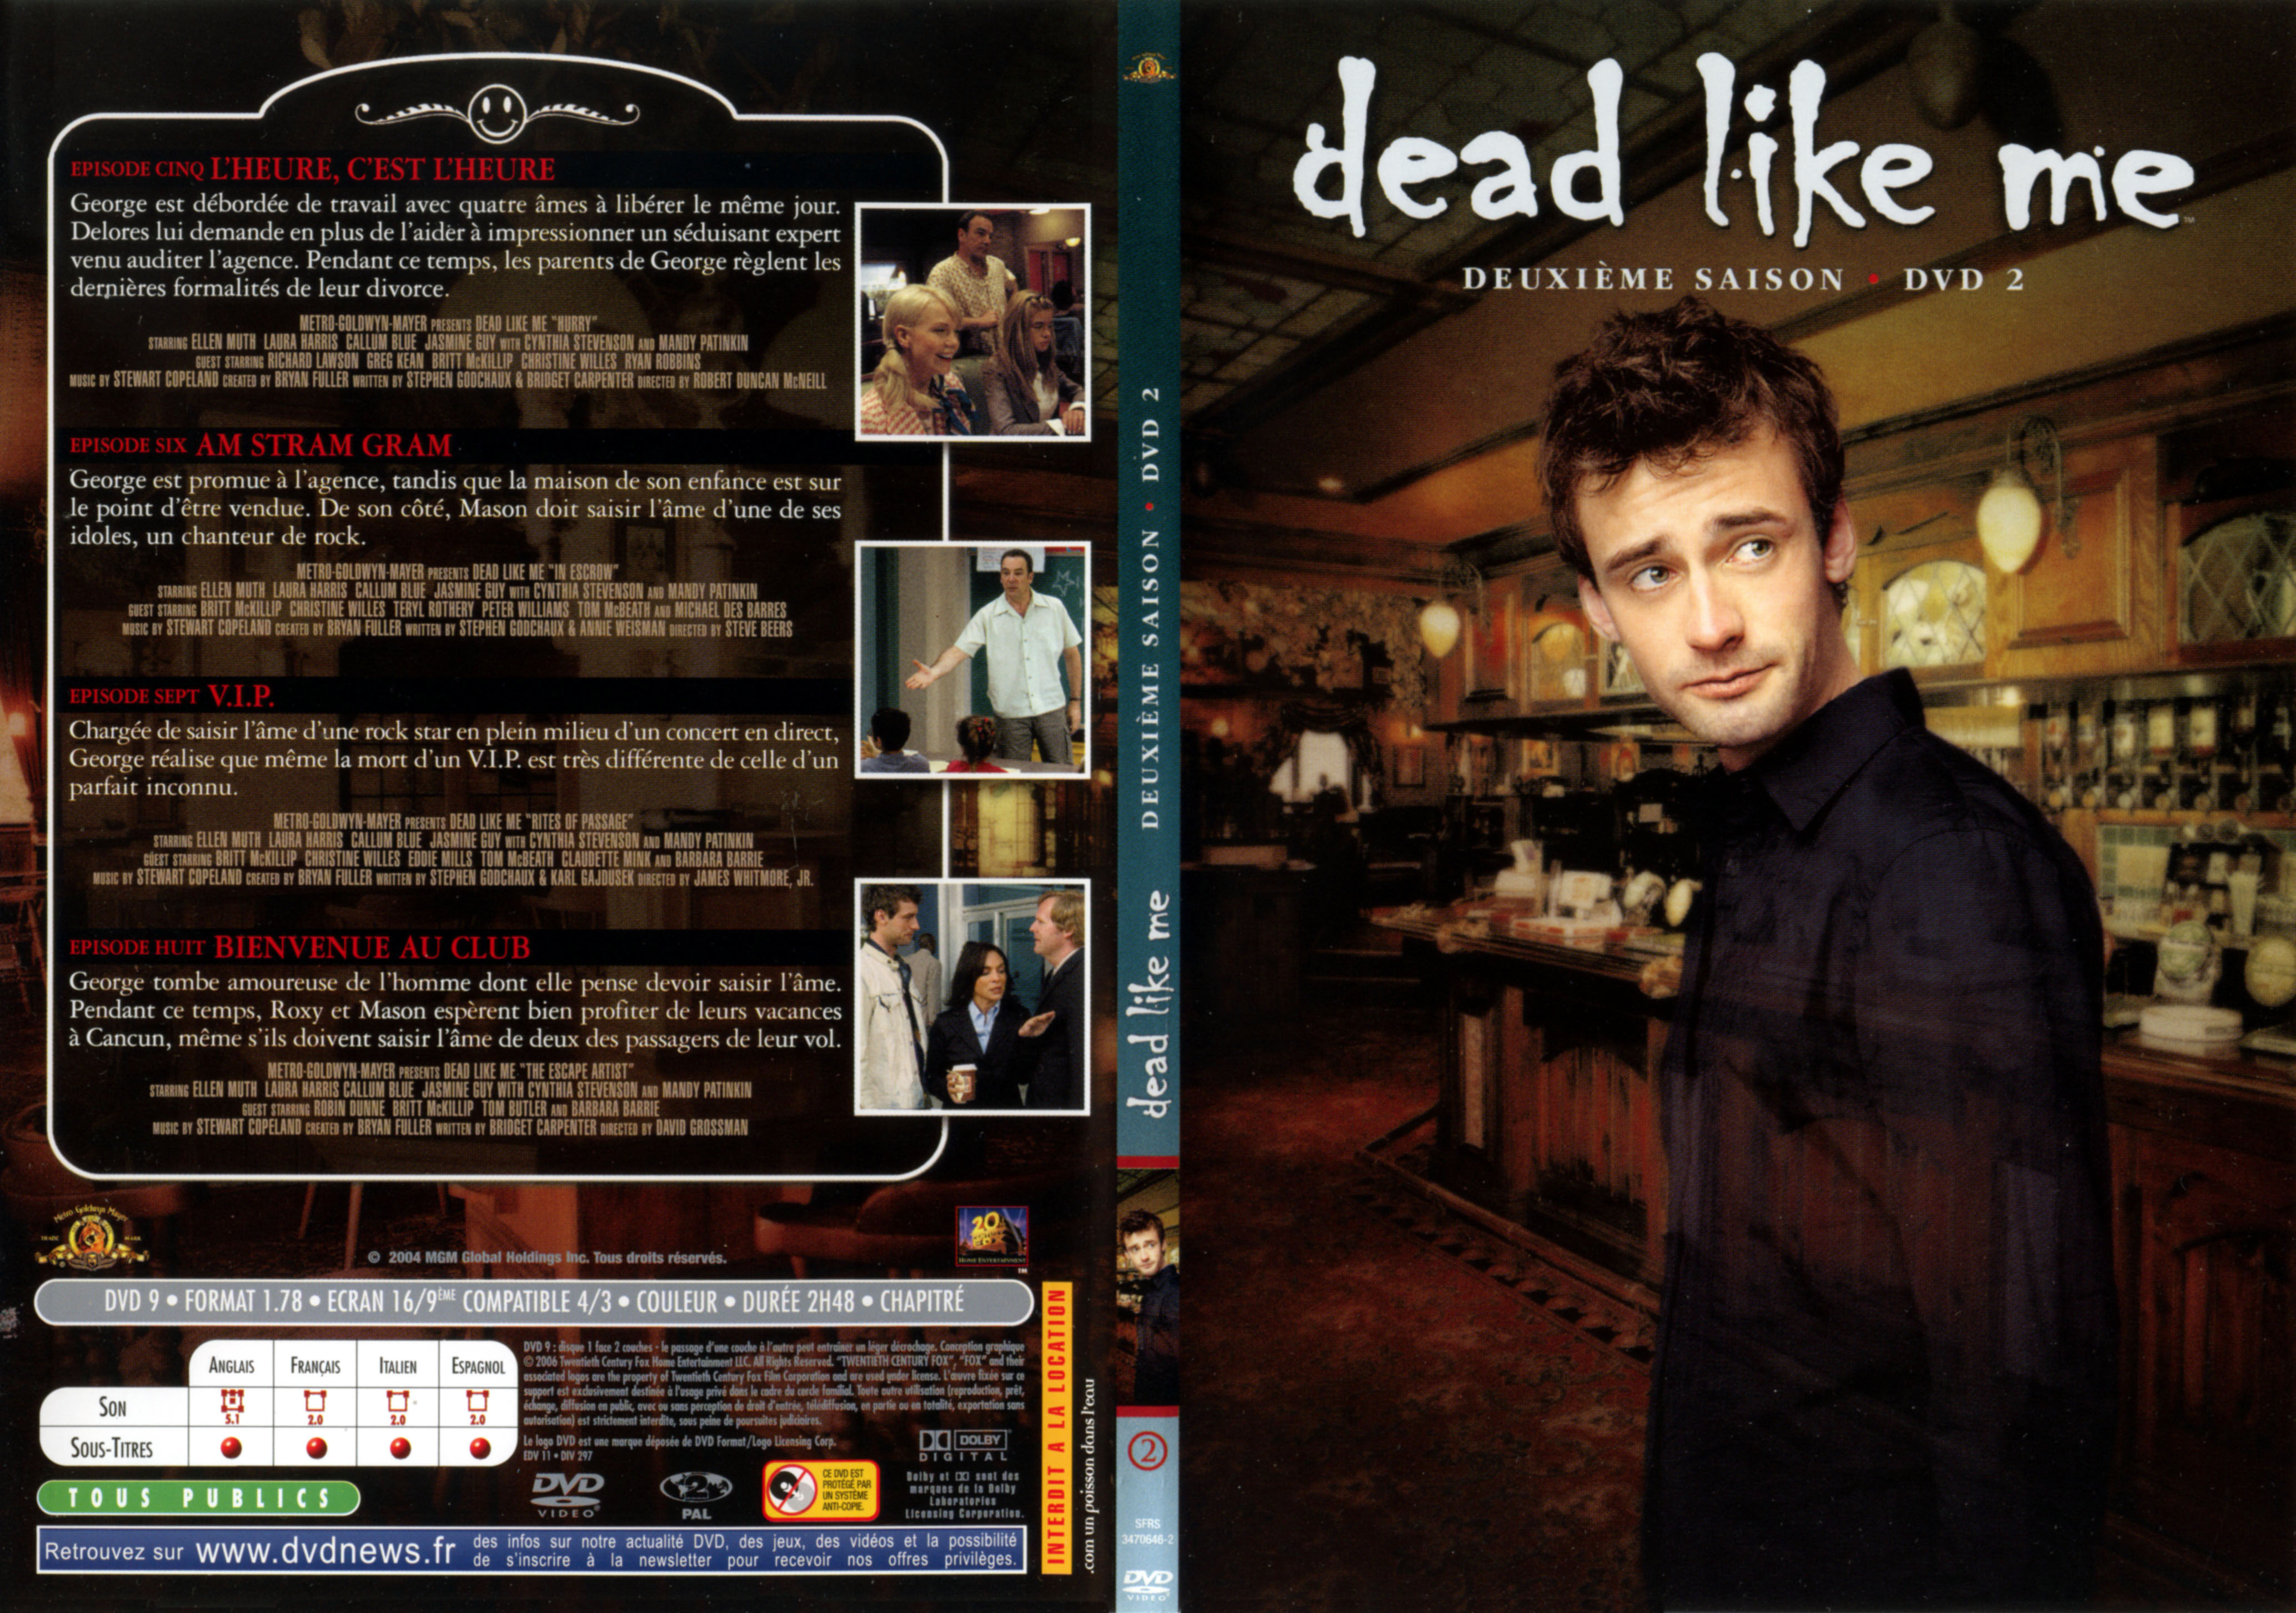 Jaquette DVD Dead like me Saison 2 DVD 2